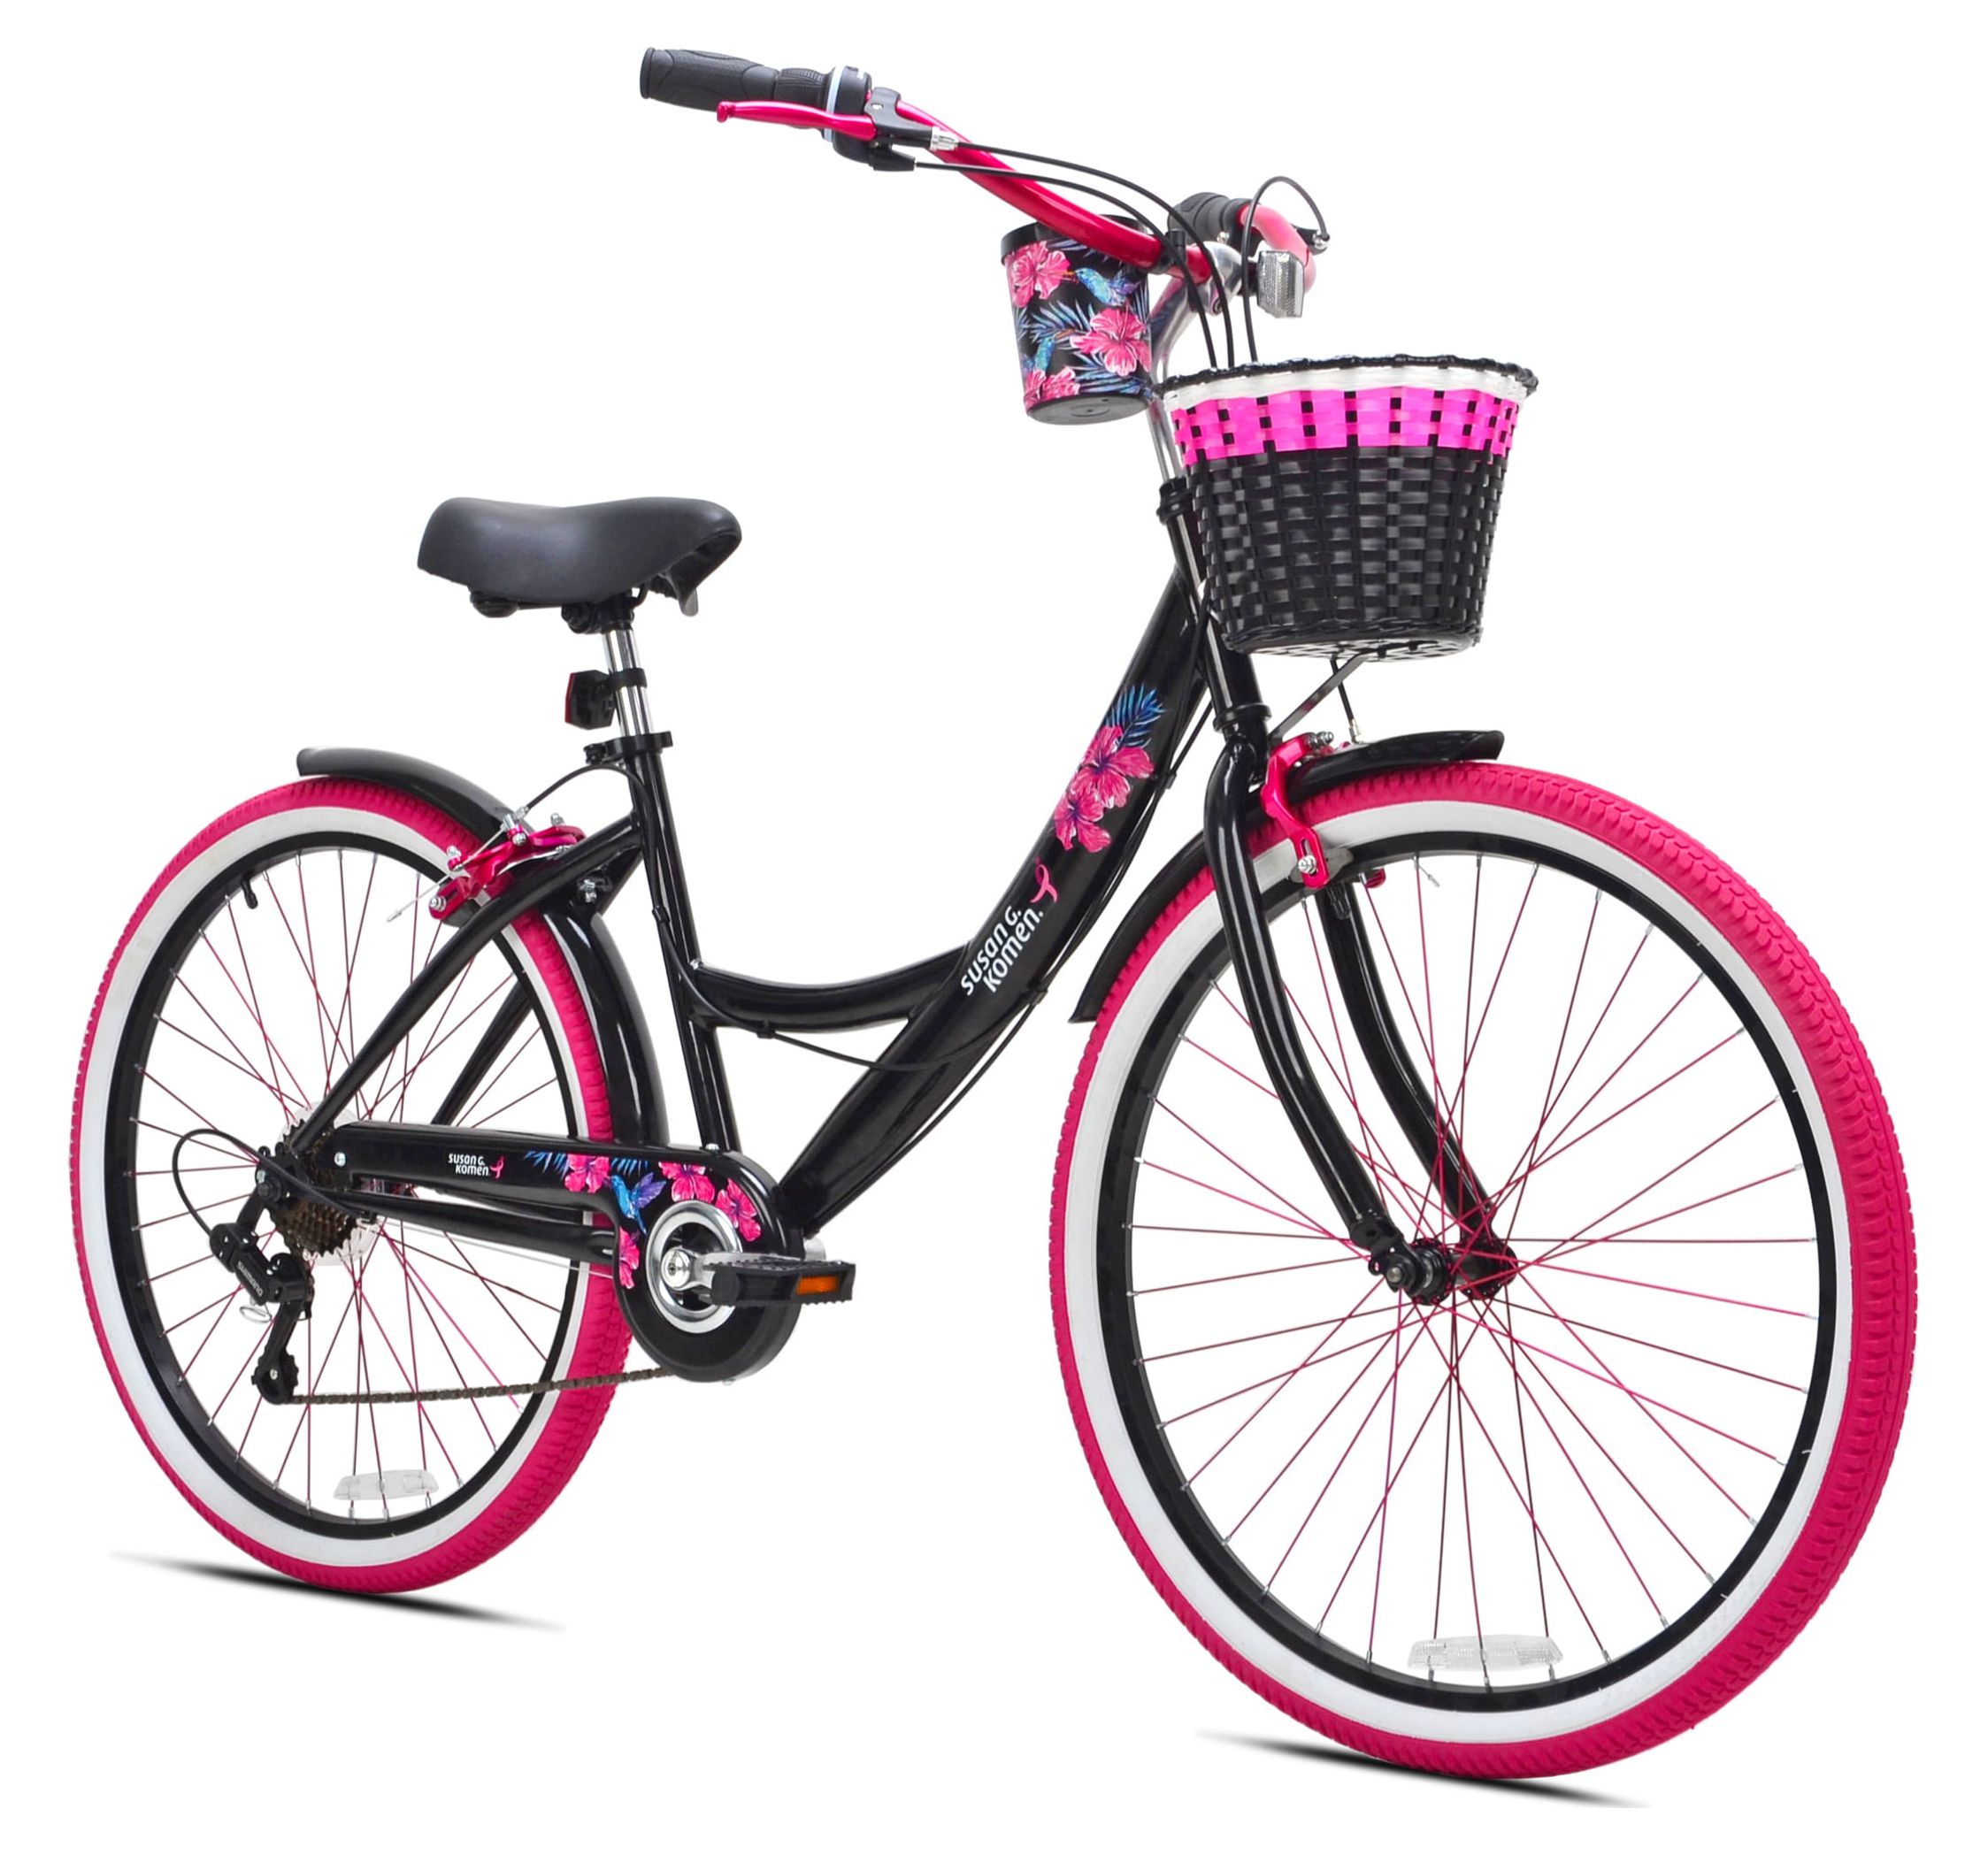 Susan G Komen 26" Women's Cruiser Bike, Black/Pink - image 1 of 10